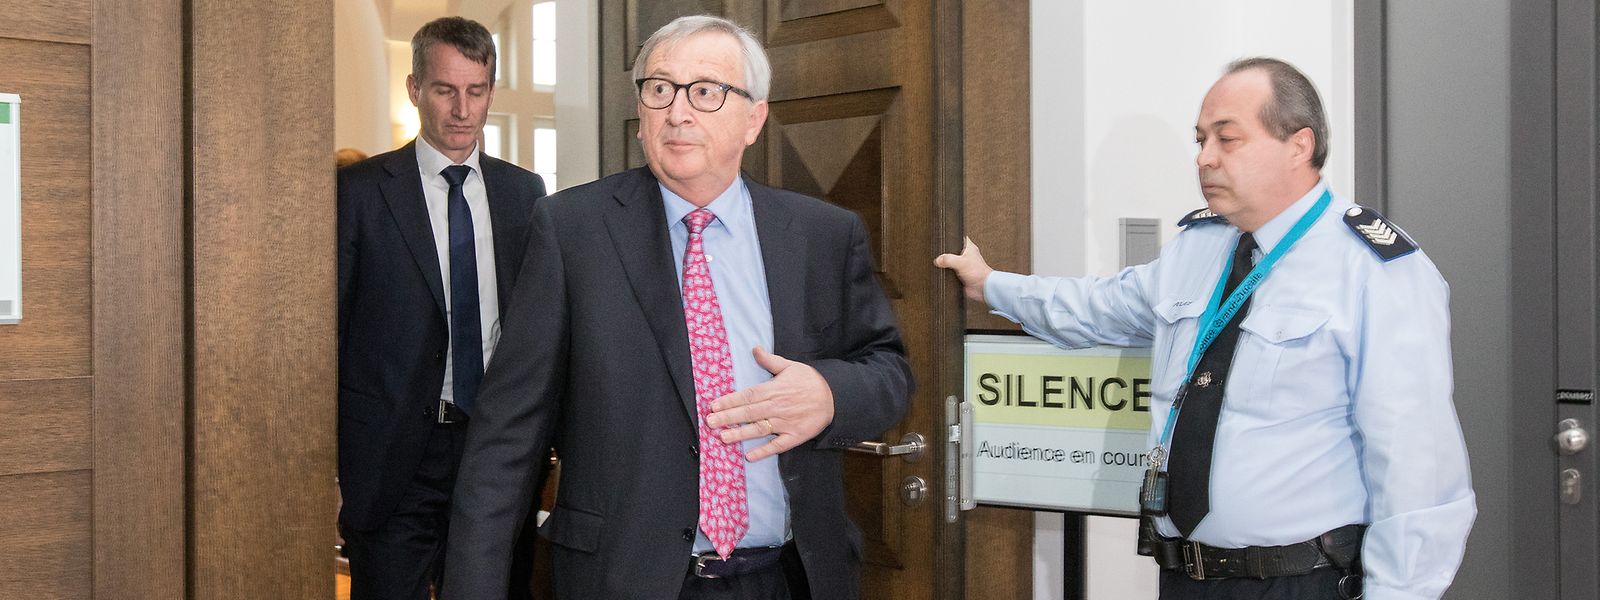 Jean-Claude Juncker ne se souvient pas d'avoir donné son autorisation aux écoutes, mais sans pouvoir toutefois non plus l'exclure...